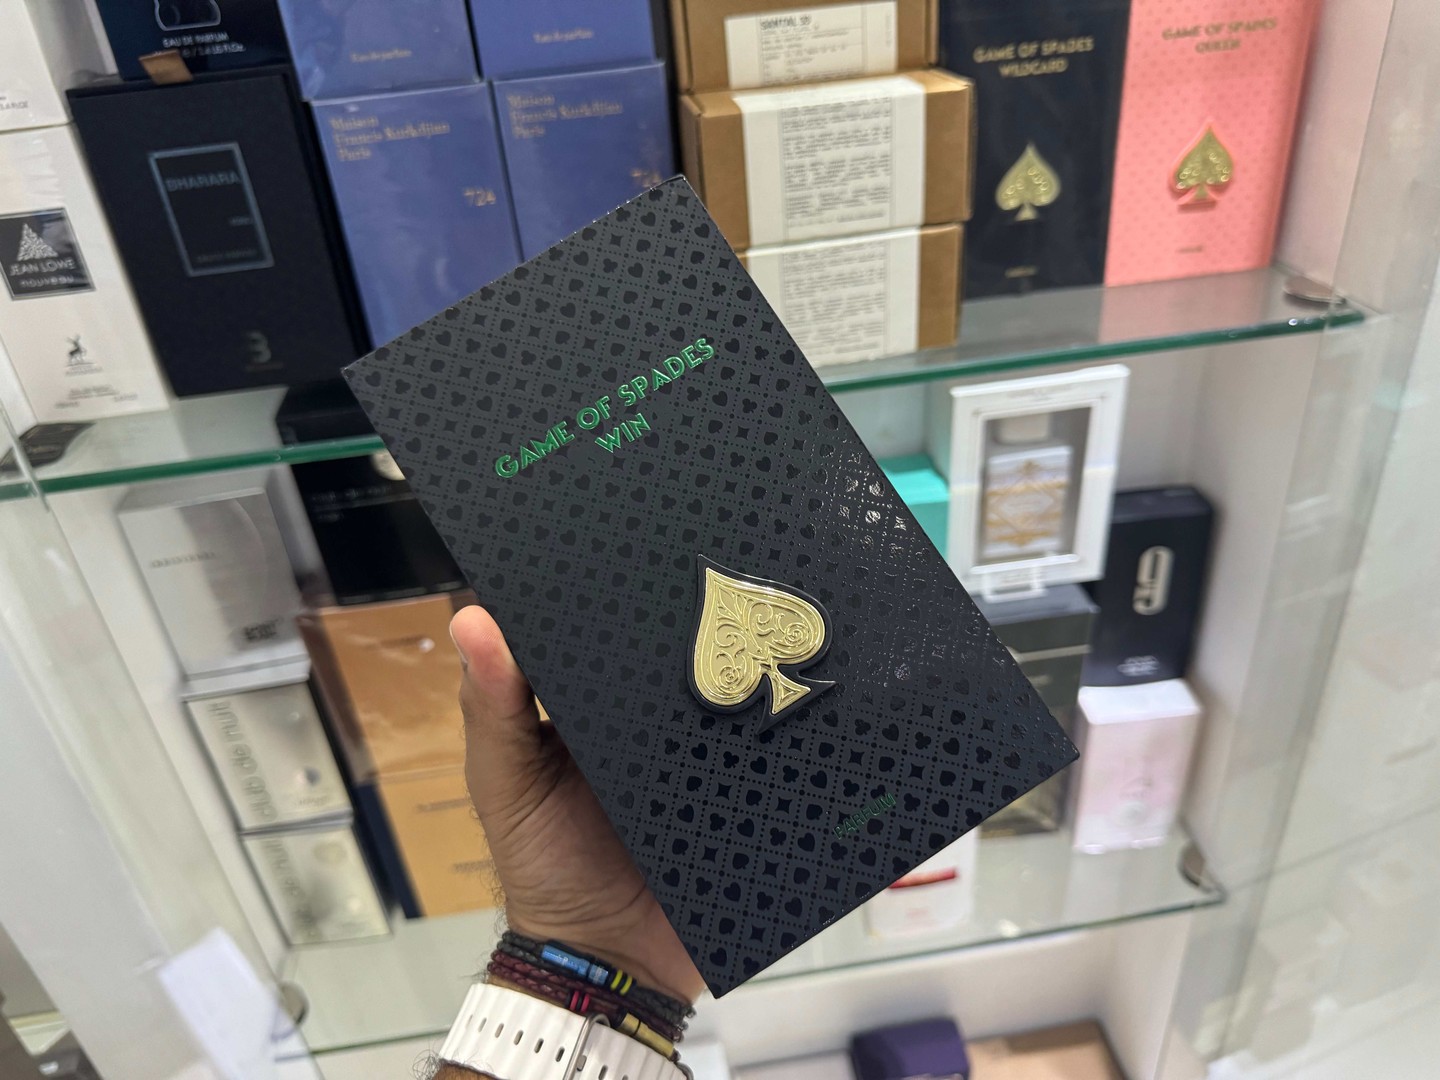 joyas, relojes y accesorios - Perfume Jo Milano Game of Spades WIN Nuevos, Originales $ 5,500 NEG| TIENDA 0